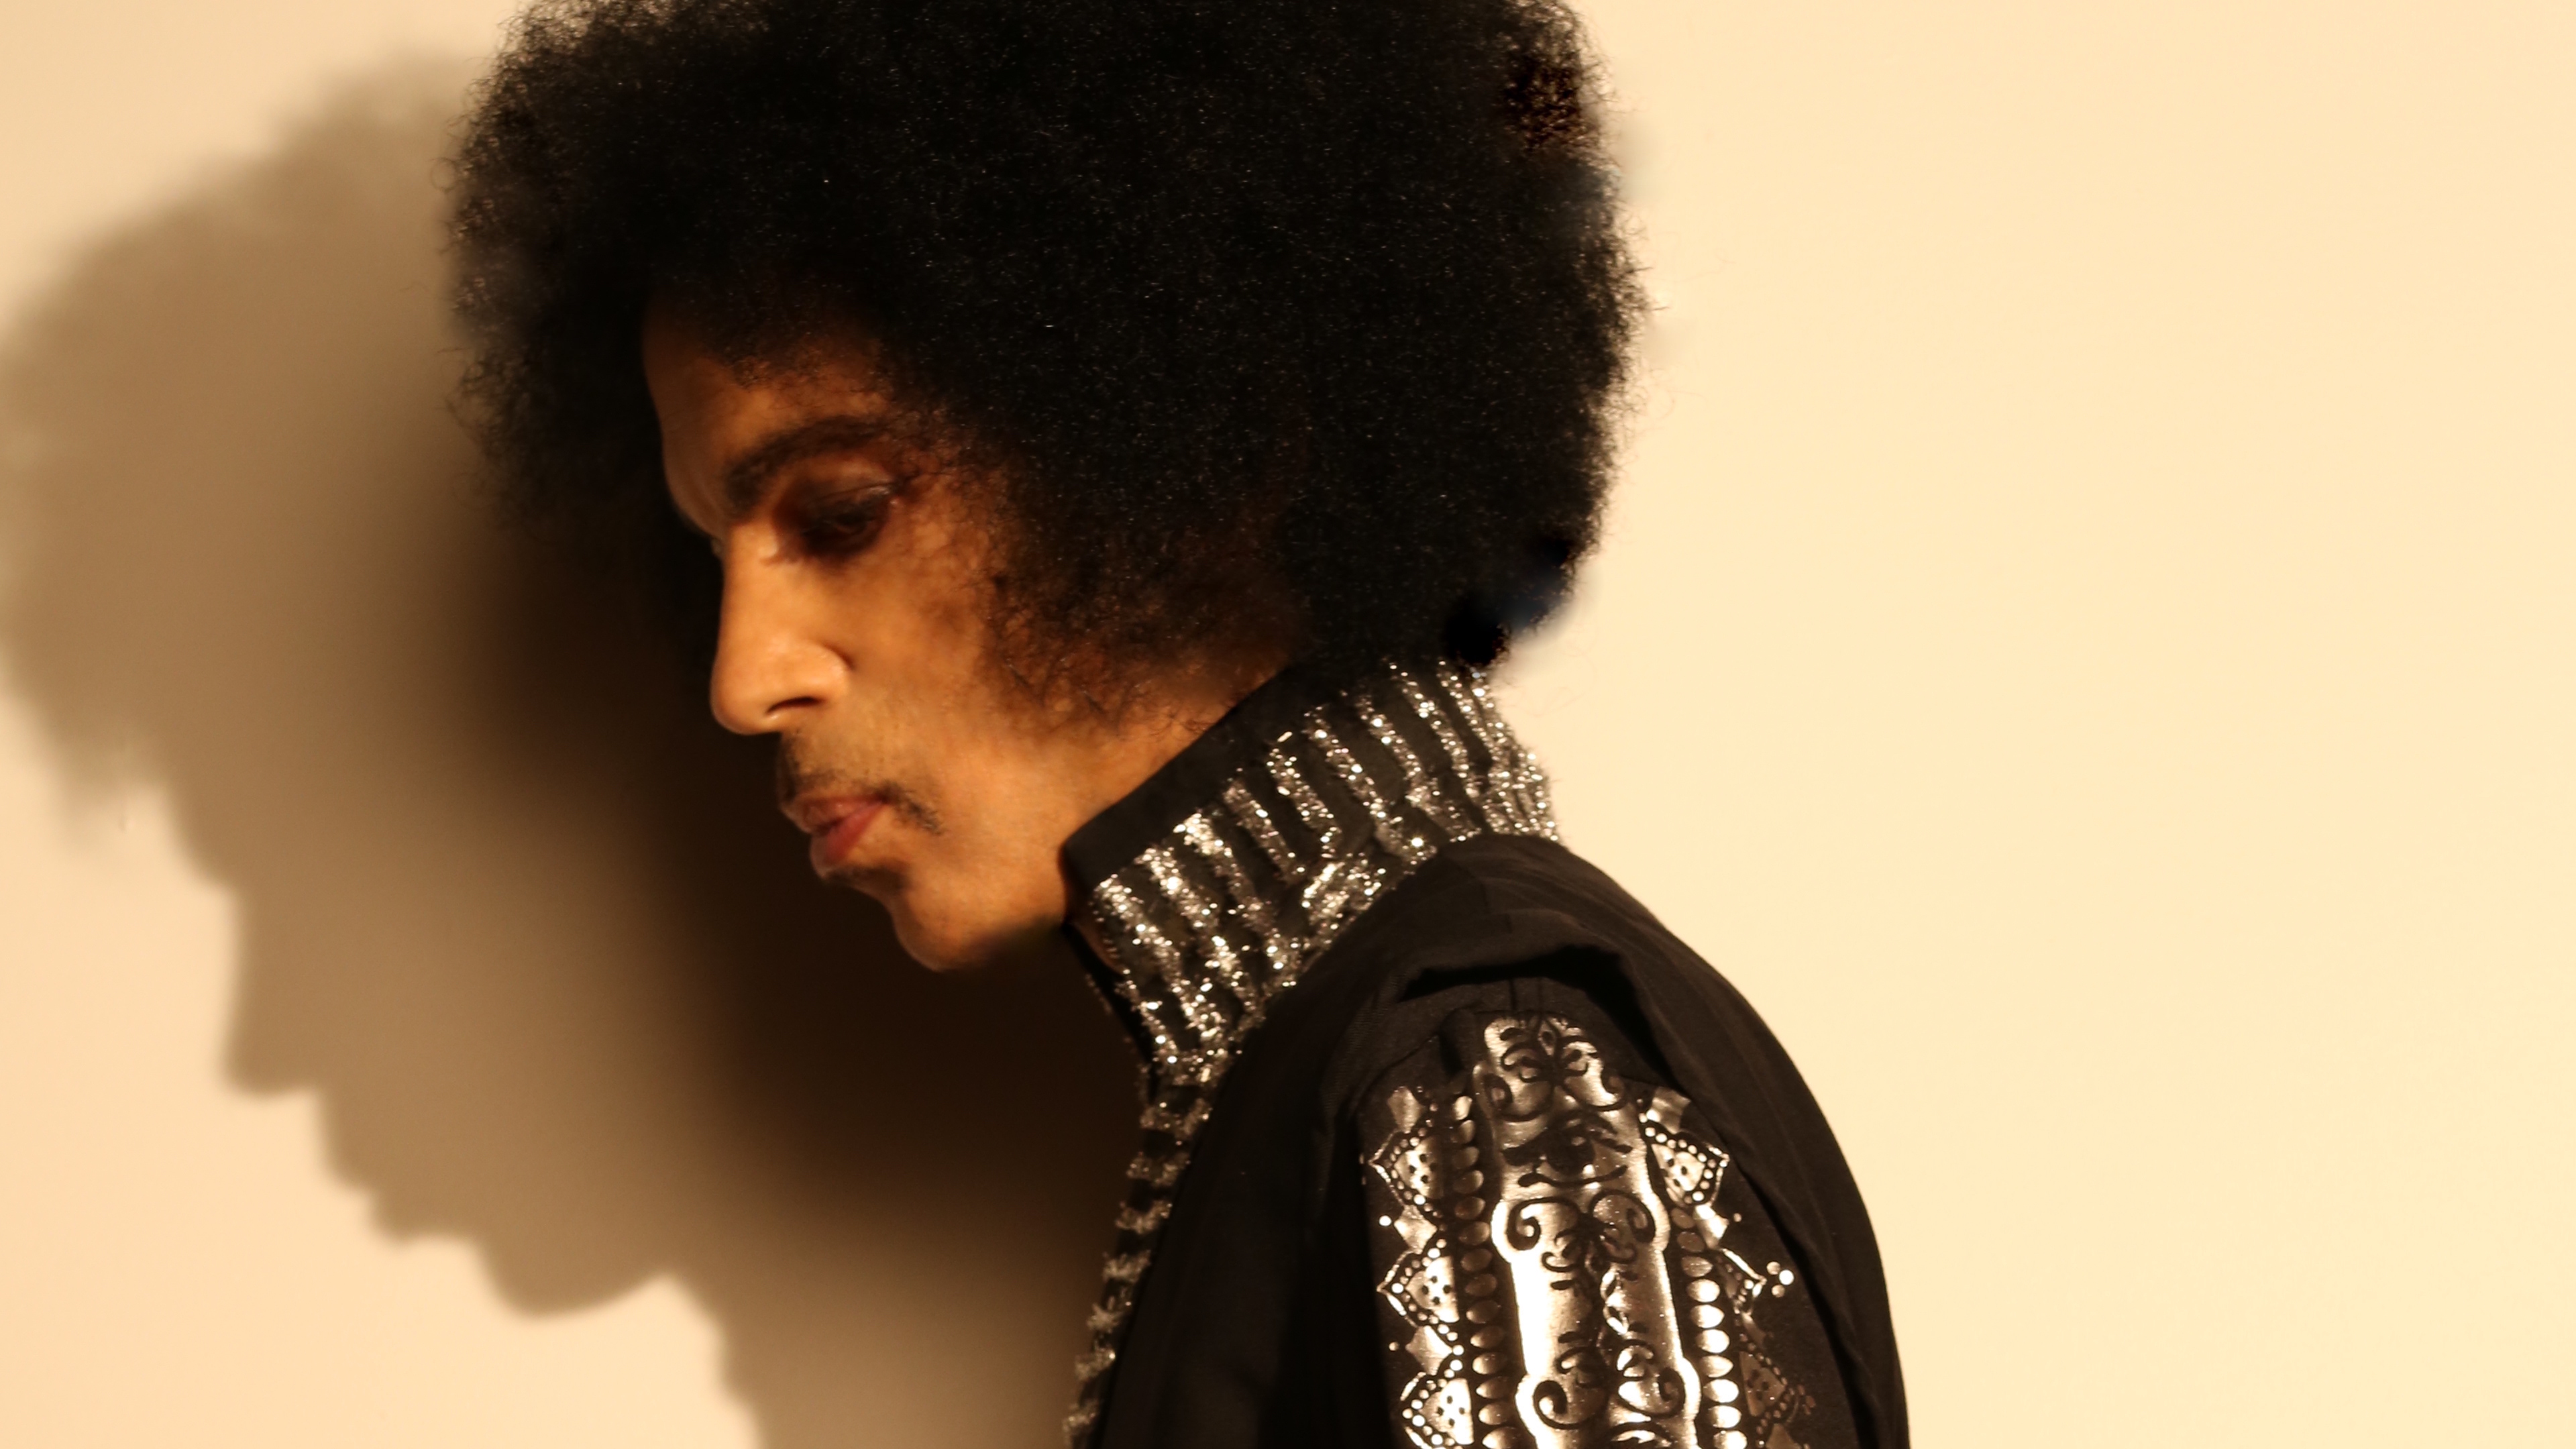 Fallece el cantante Prince a sus 57 años